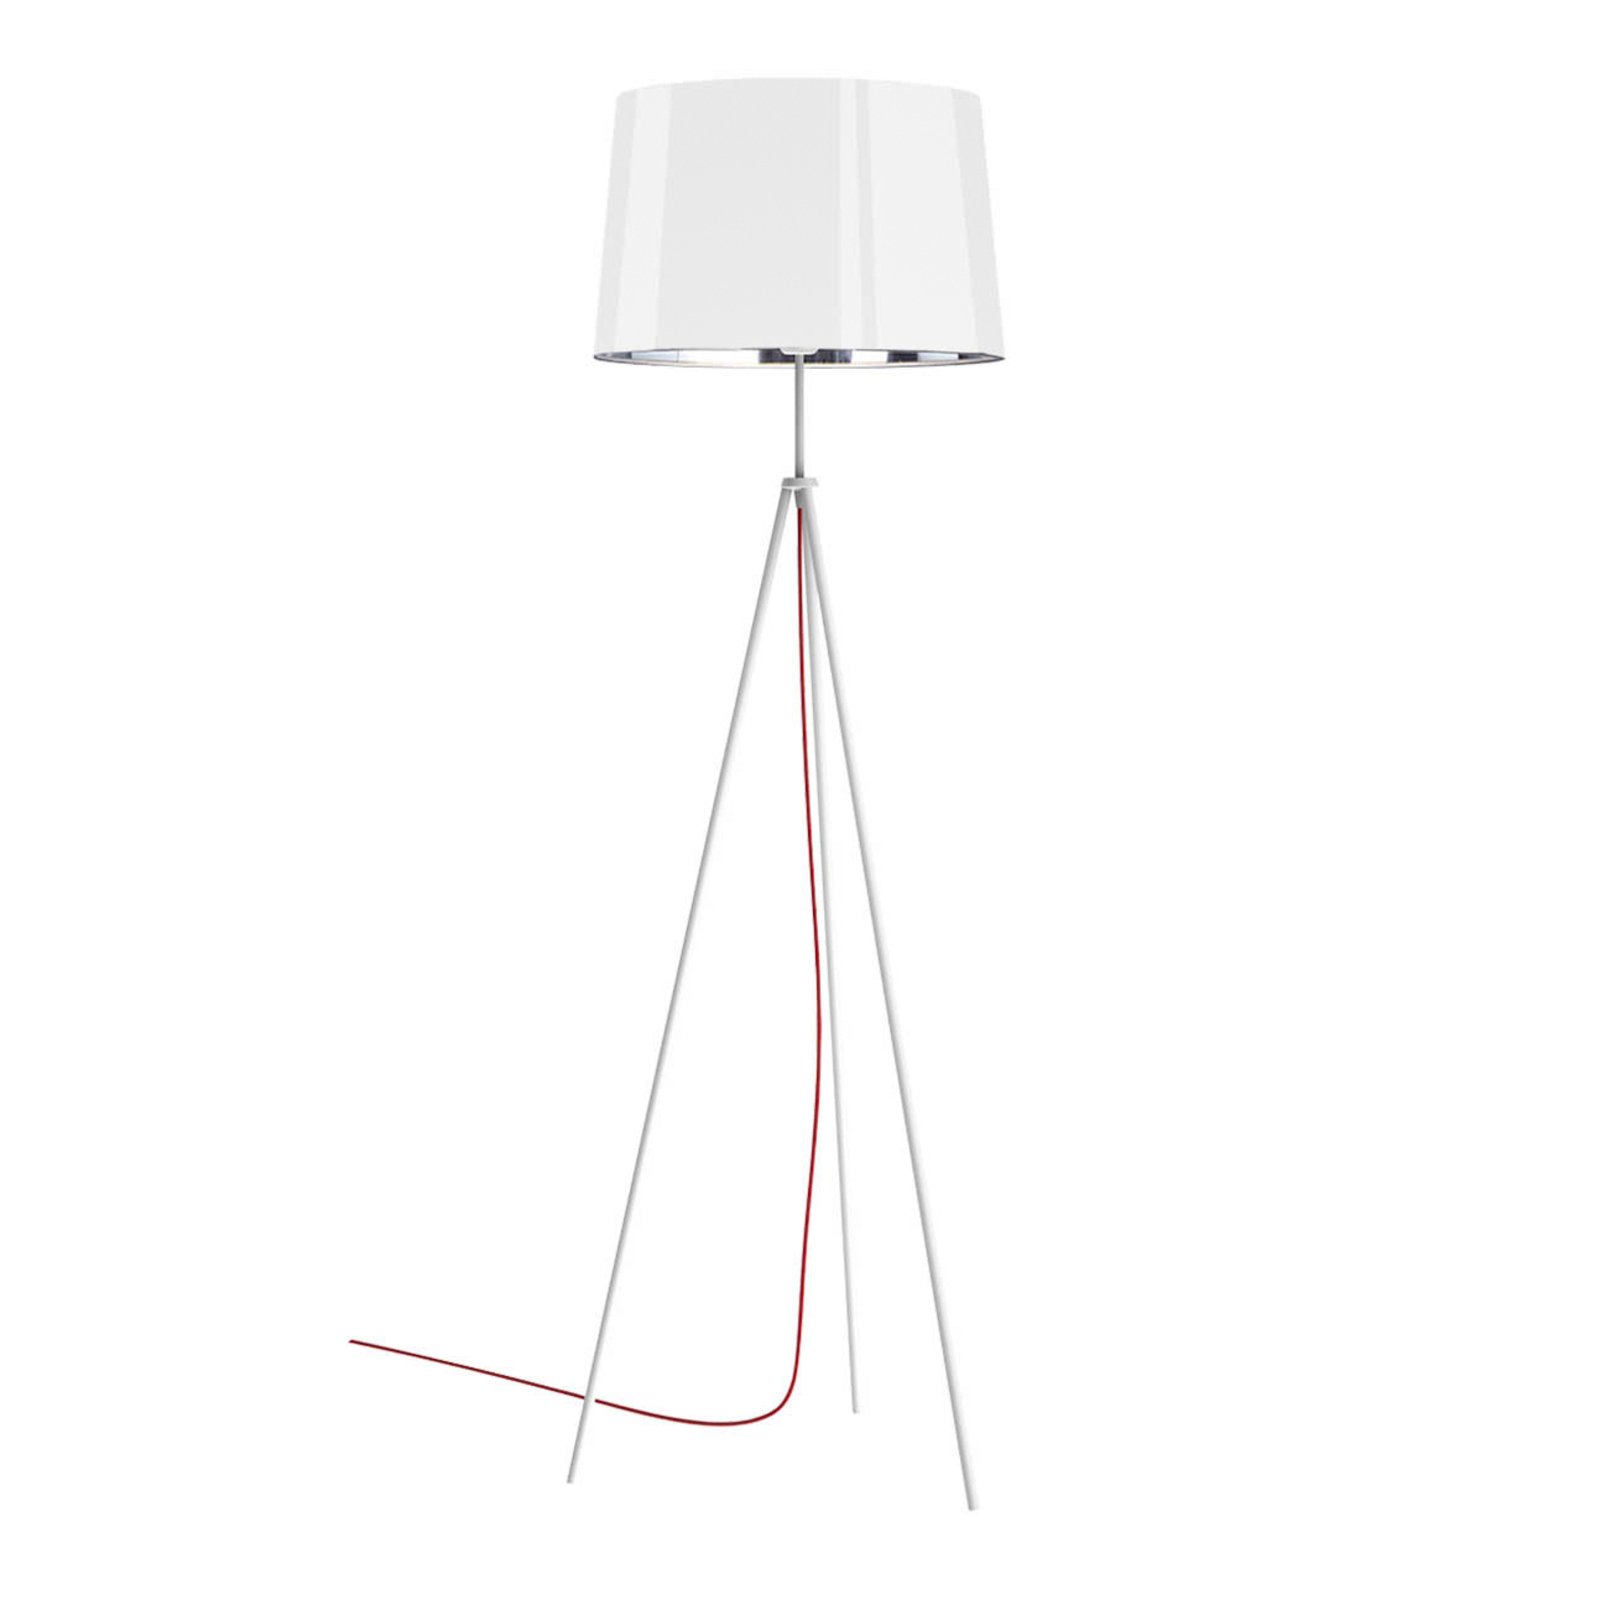 Aluminor Tropic stojací lampa bílá, kabel červený